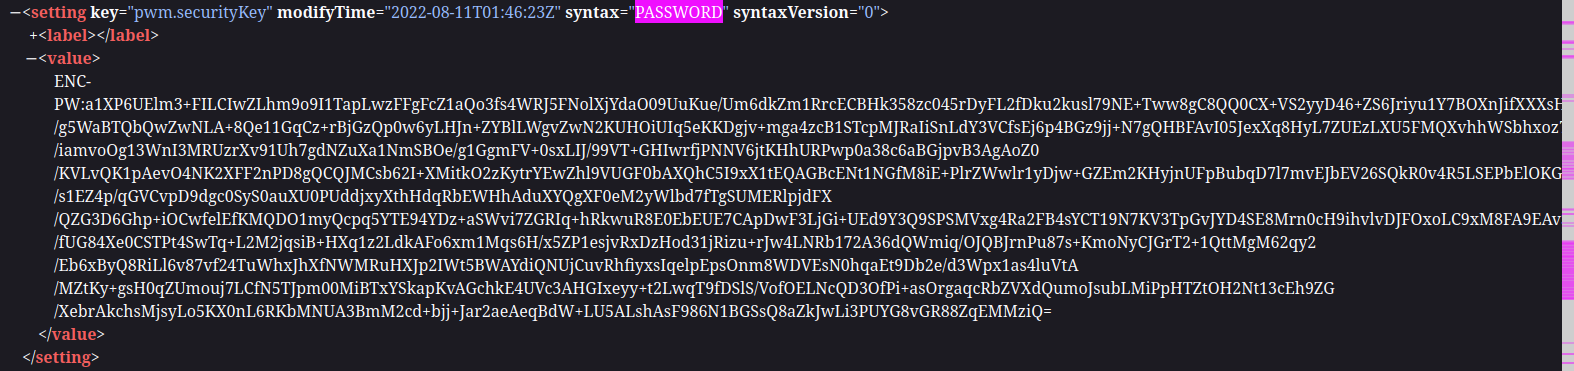 pwm security key in xml